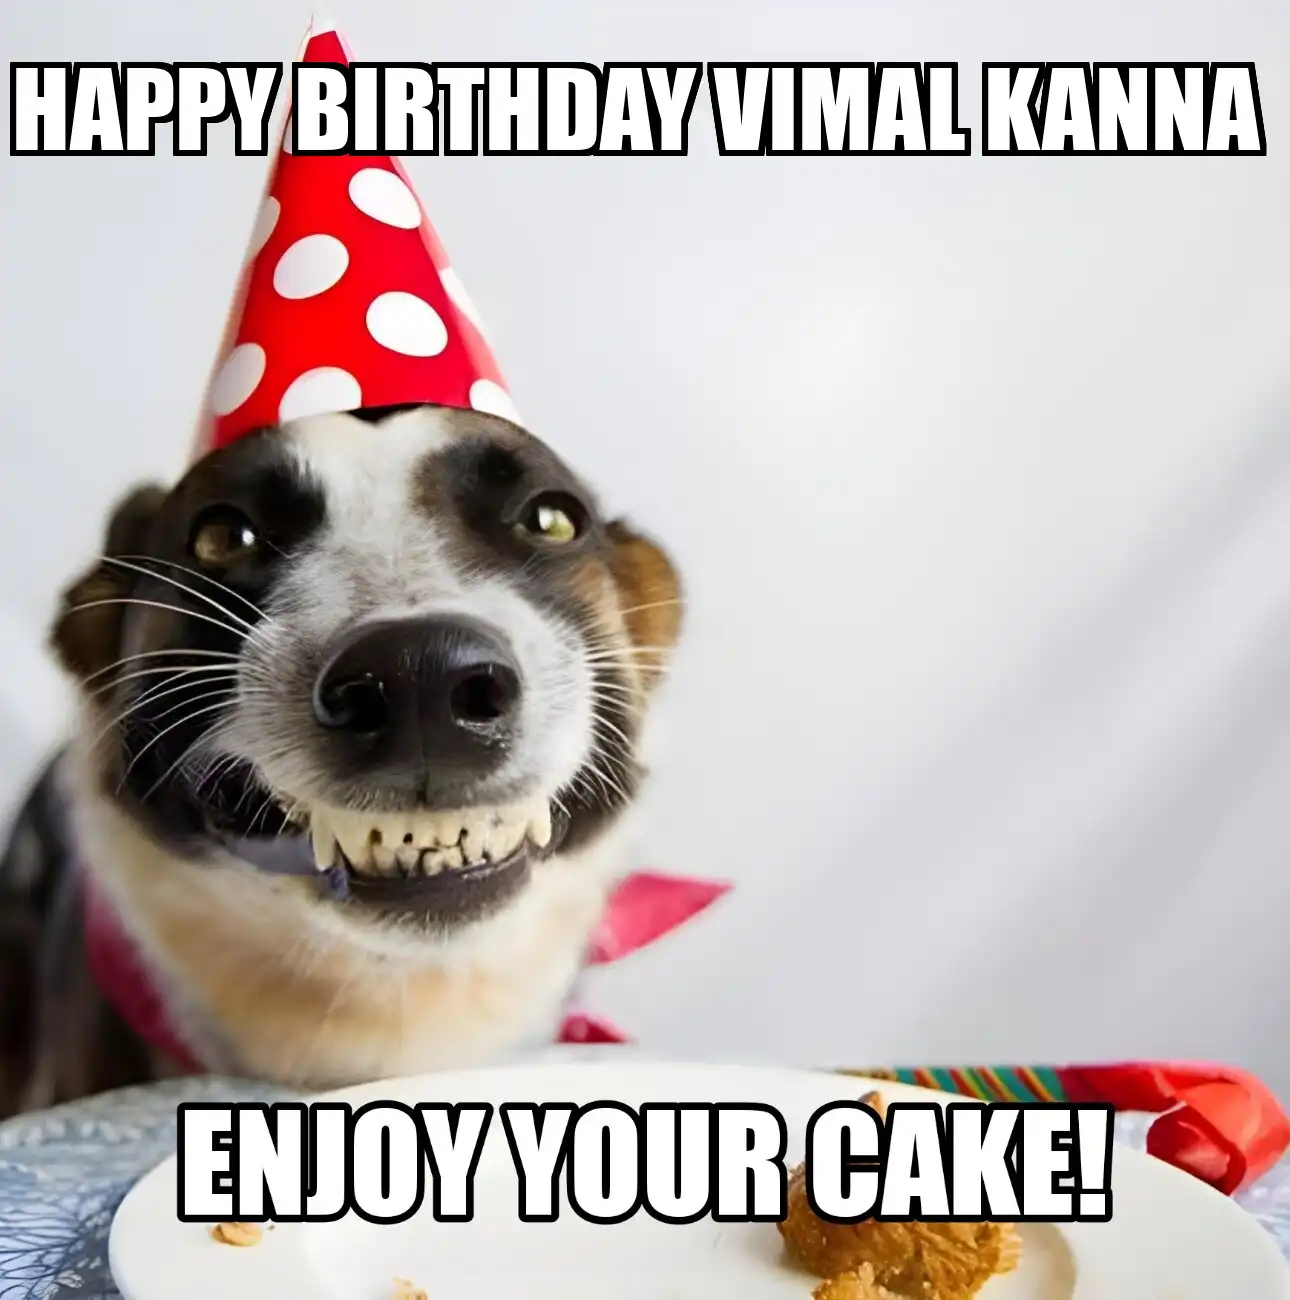 Happy Birthday Vimal kanna Enjoy Your Cake Dog Meme